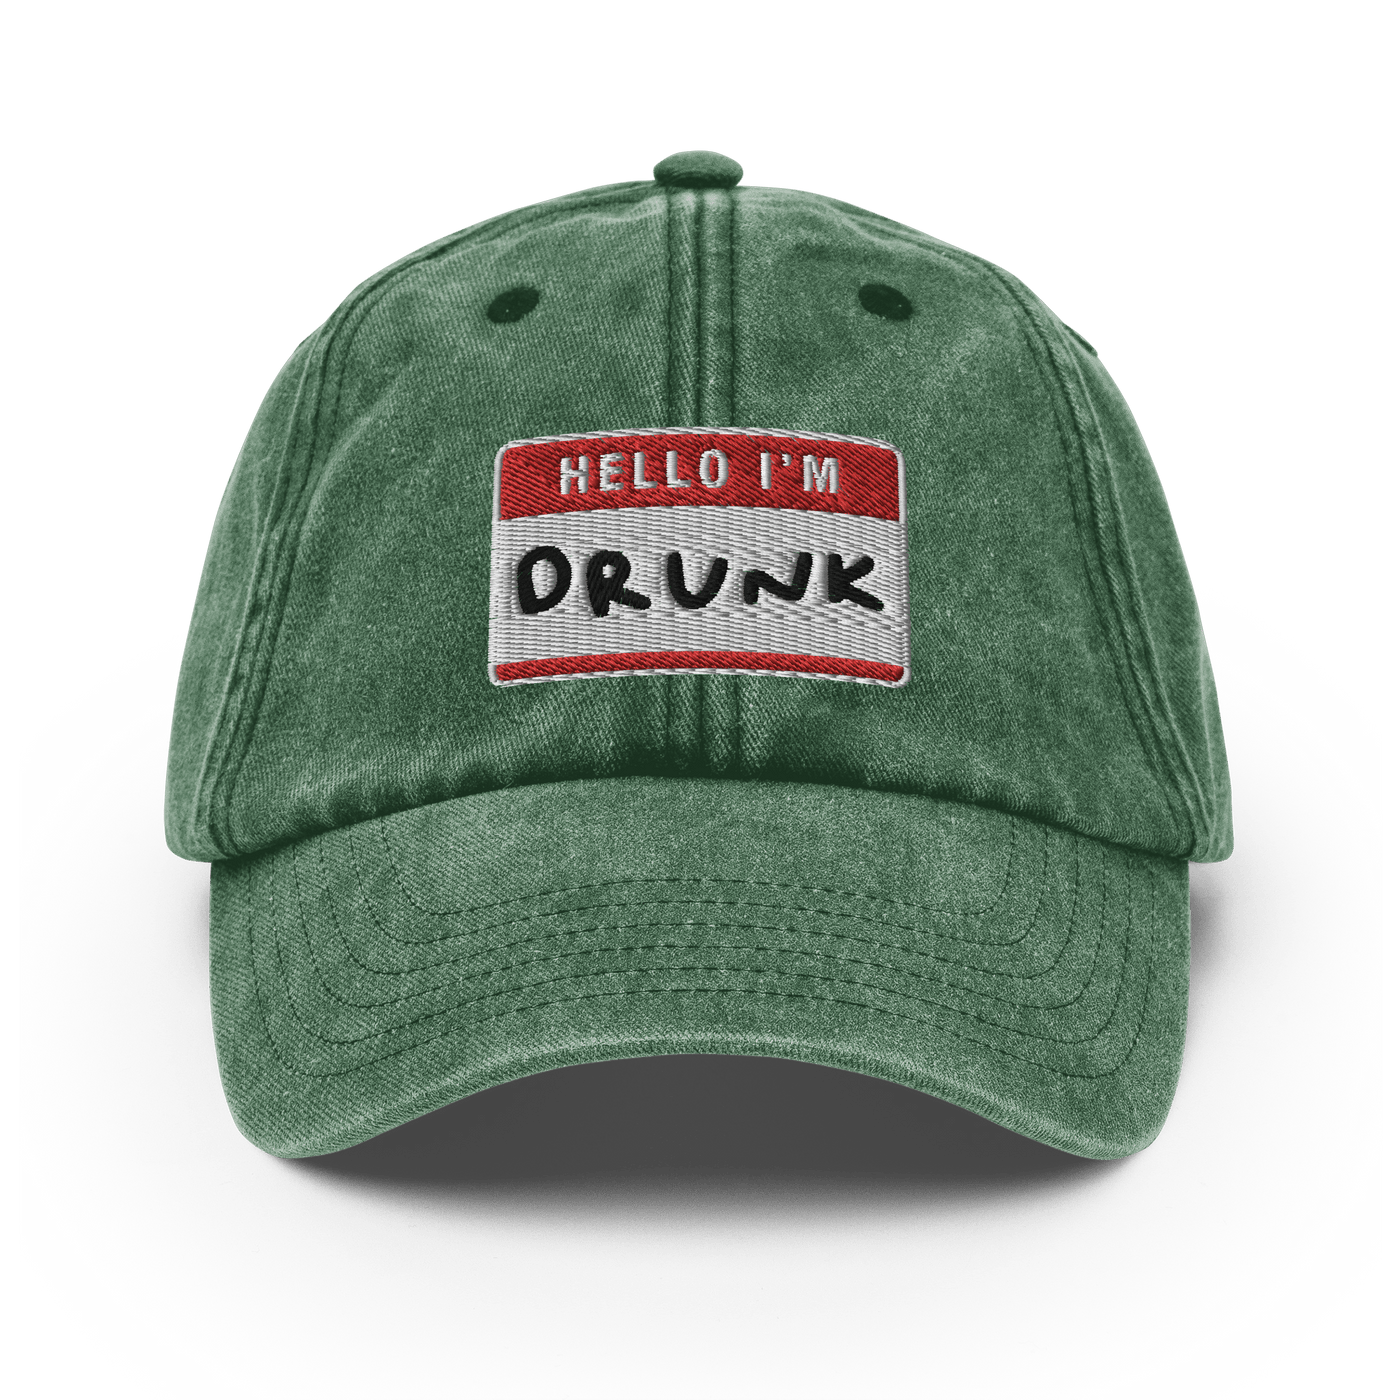 I'm Drunk Vintage Hat - Vintage Bottle Green - - Just Another Cap Store